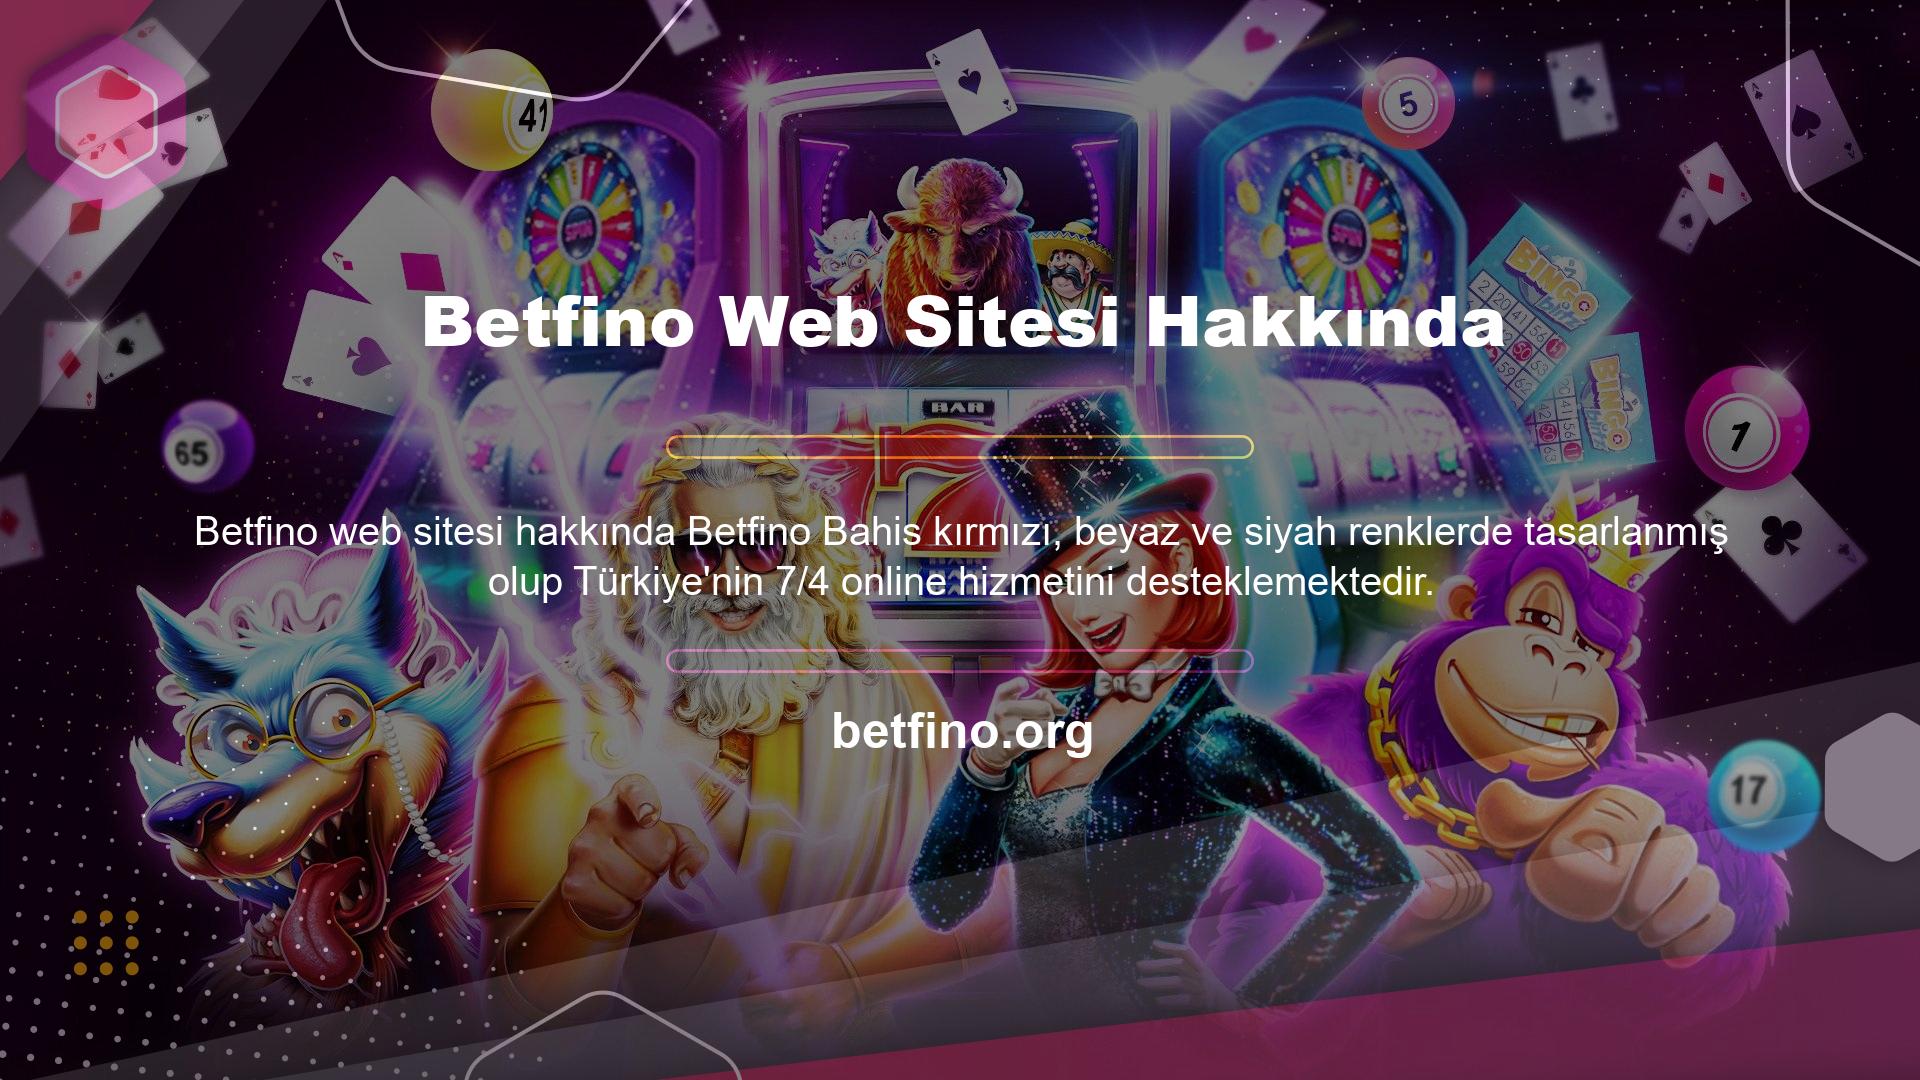 Betfino web sitesine güvenebilir misiniz? Çevrimiçi hizmetlerimiz arasında spor ve canlı bahis, finans, sanal bahis, poker, canlı casino bölümü, 3D slotlar, canlı oyunlar ve bingo bölümü bulunmaktadır